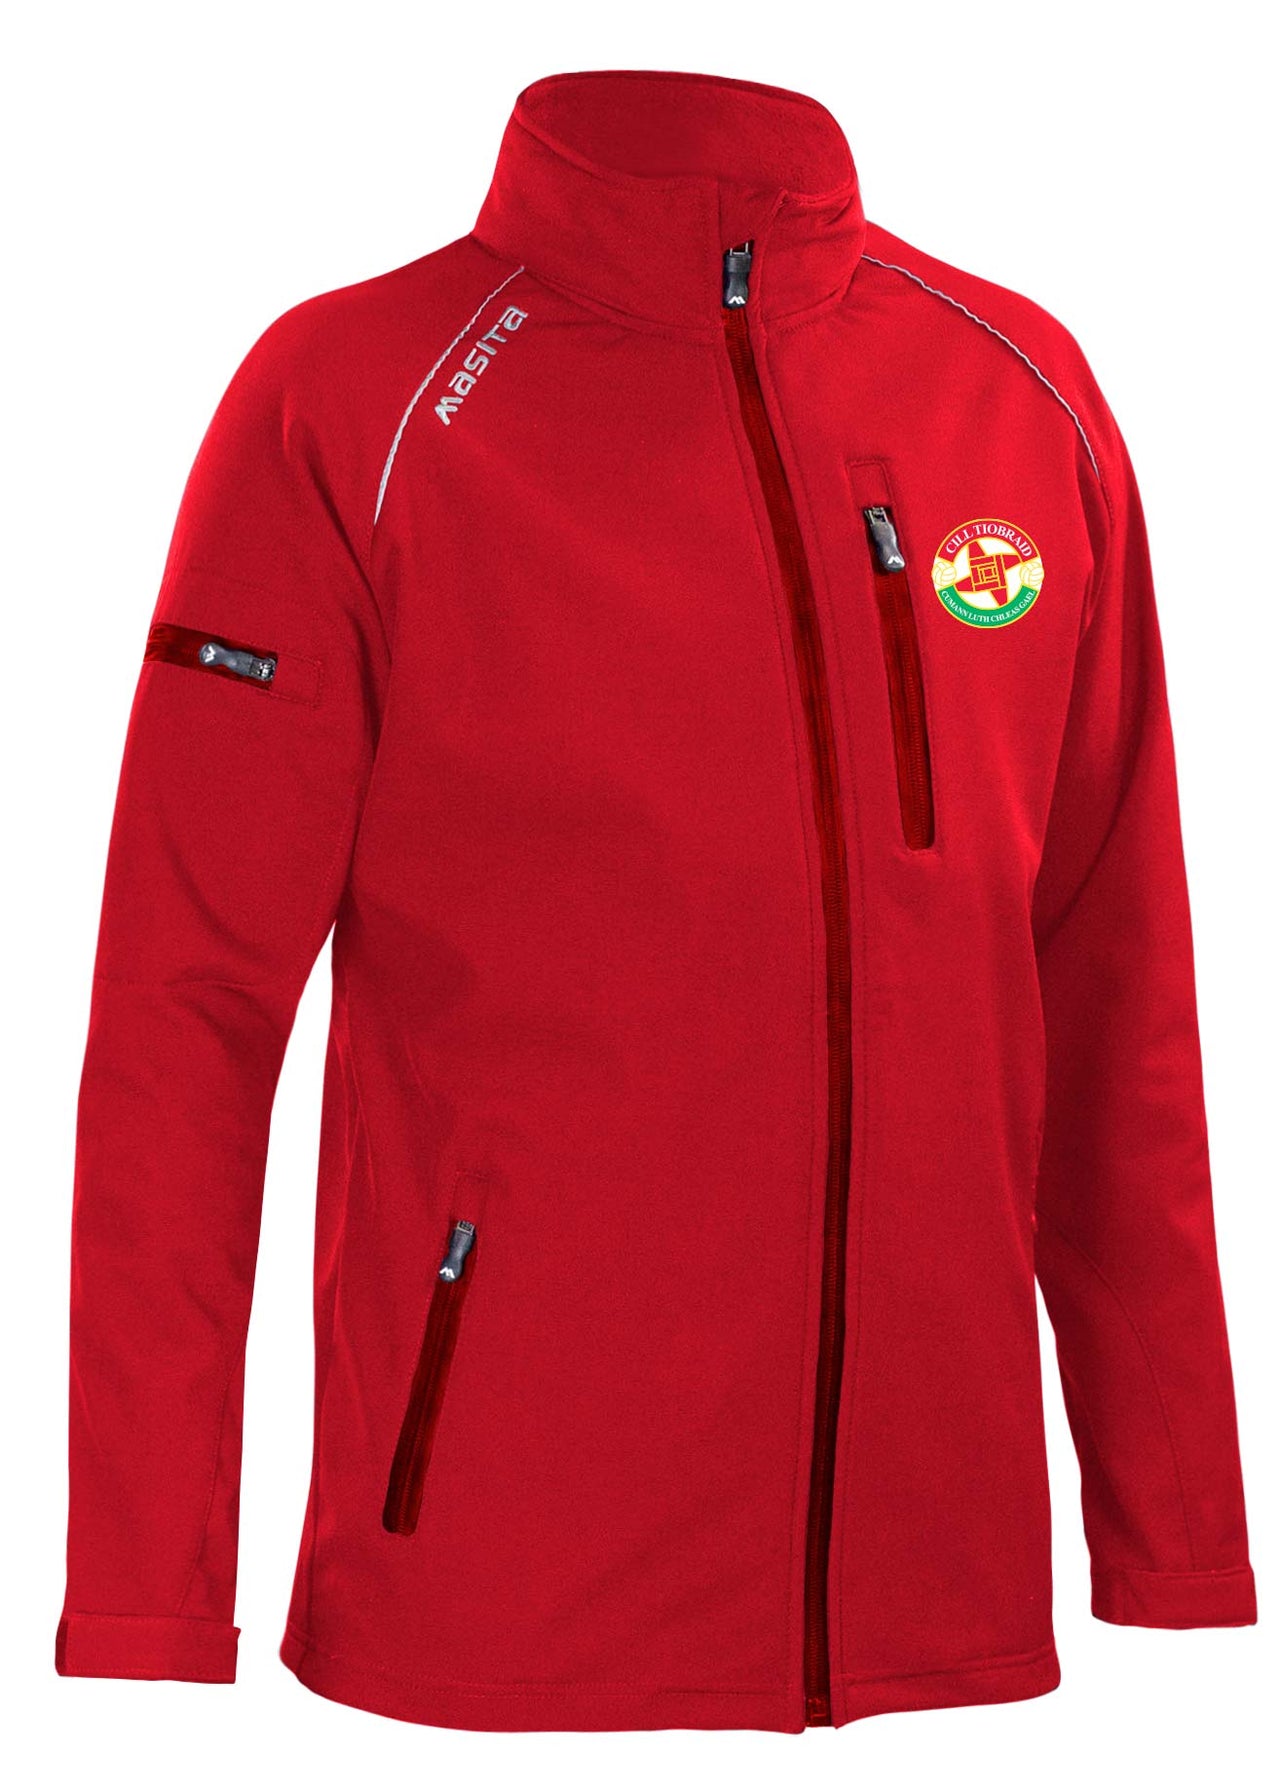 Kiltubrid GAA Red Softshell Jacket Adult